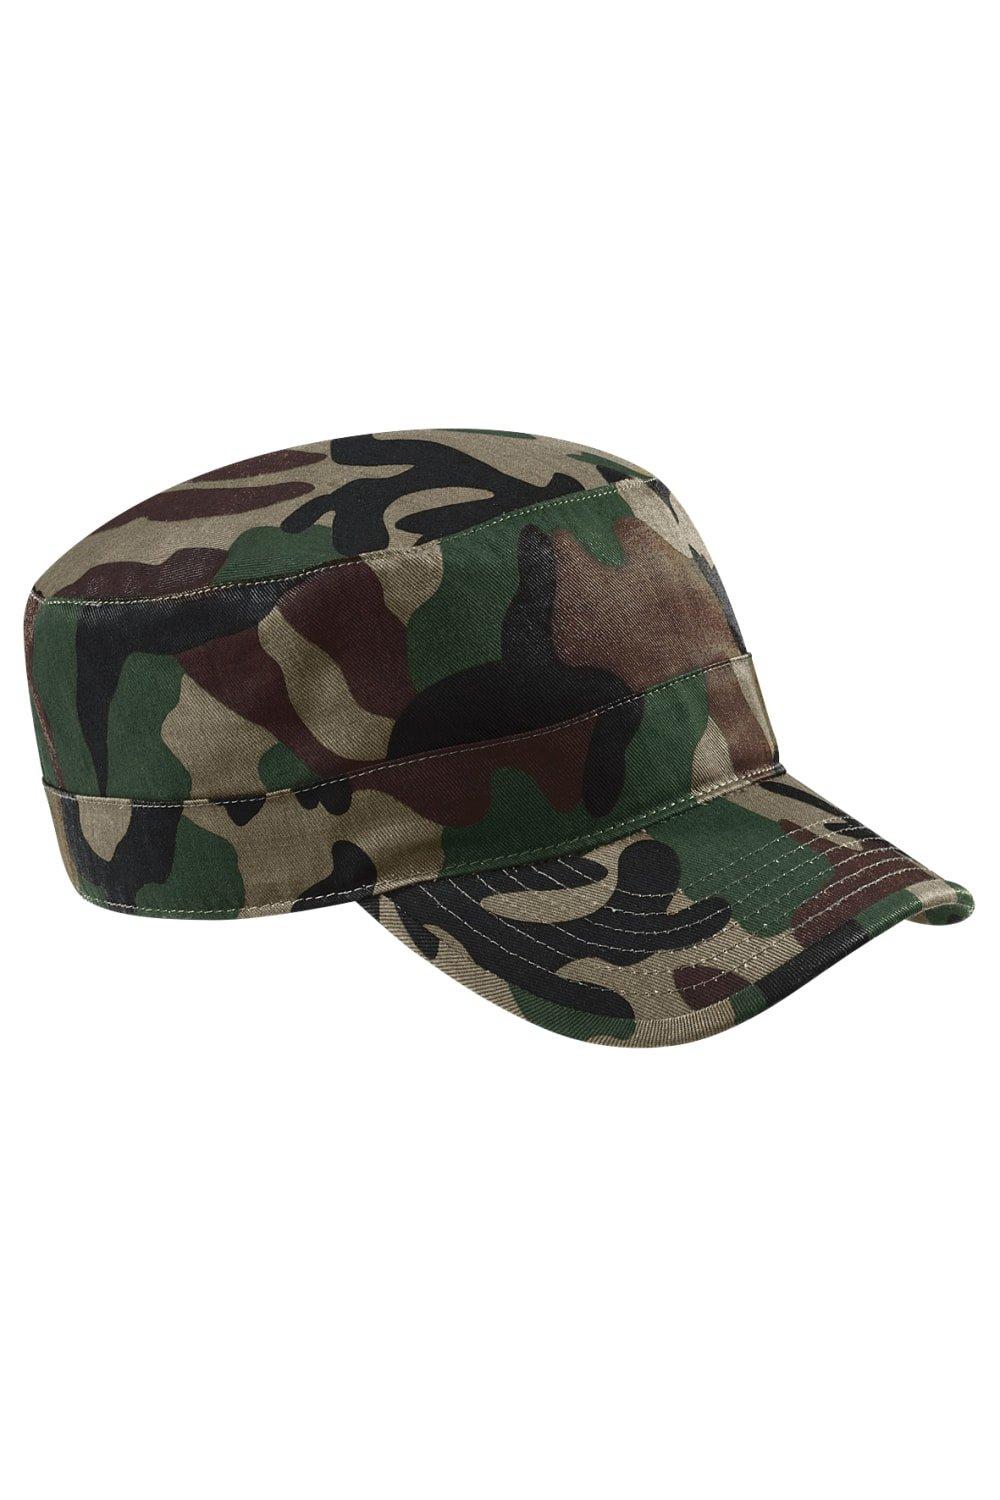 Камуфляжная армейская кепка/головной убор Beechfield, мультиколор футболка хлопок принт камуфляжный размер 56